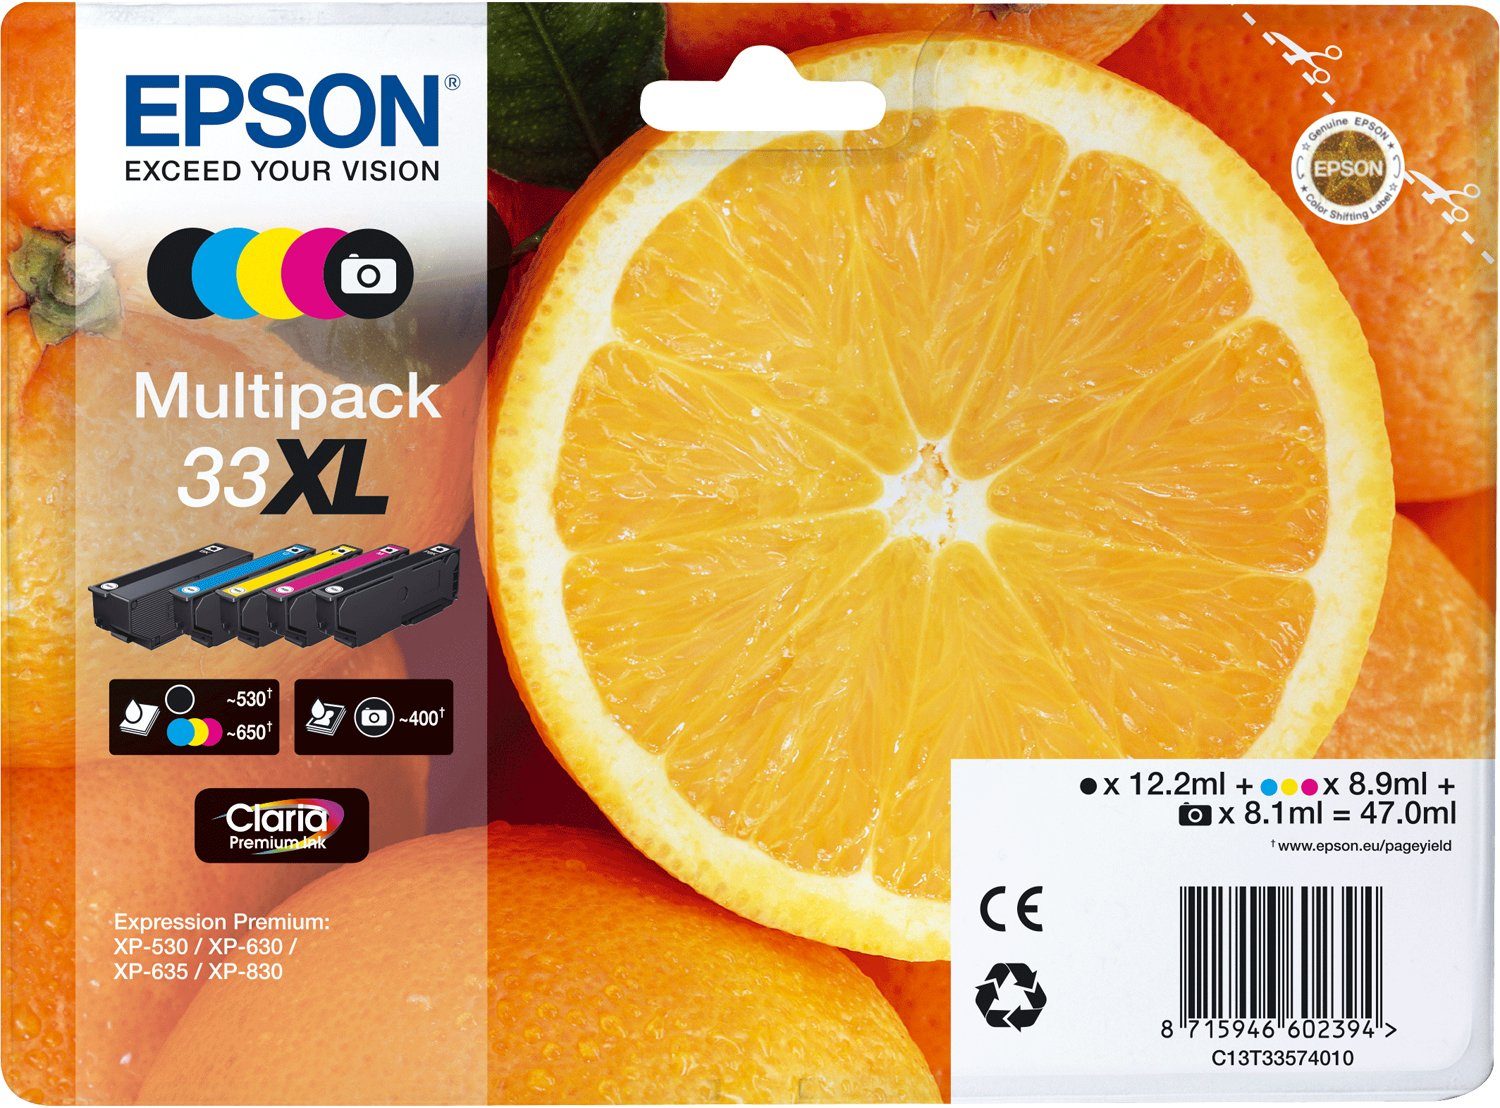 Epson Epson Oranges schwarz, Ink 33XL schwarz cyan, Premium (Foto), Claria gelb 5-colours Tintenpatrone Multipack magenta